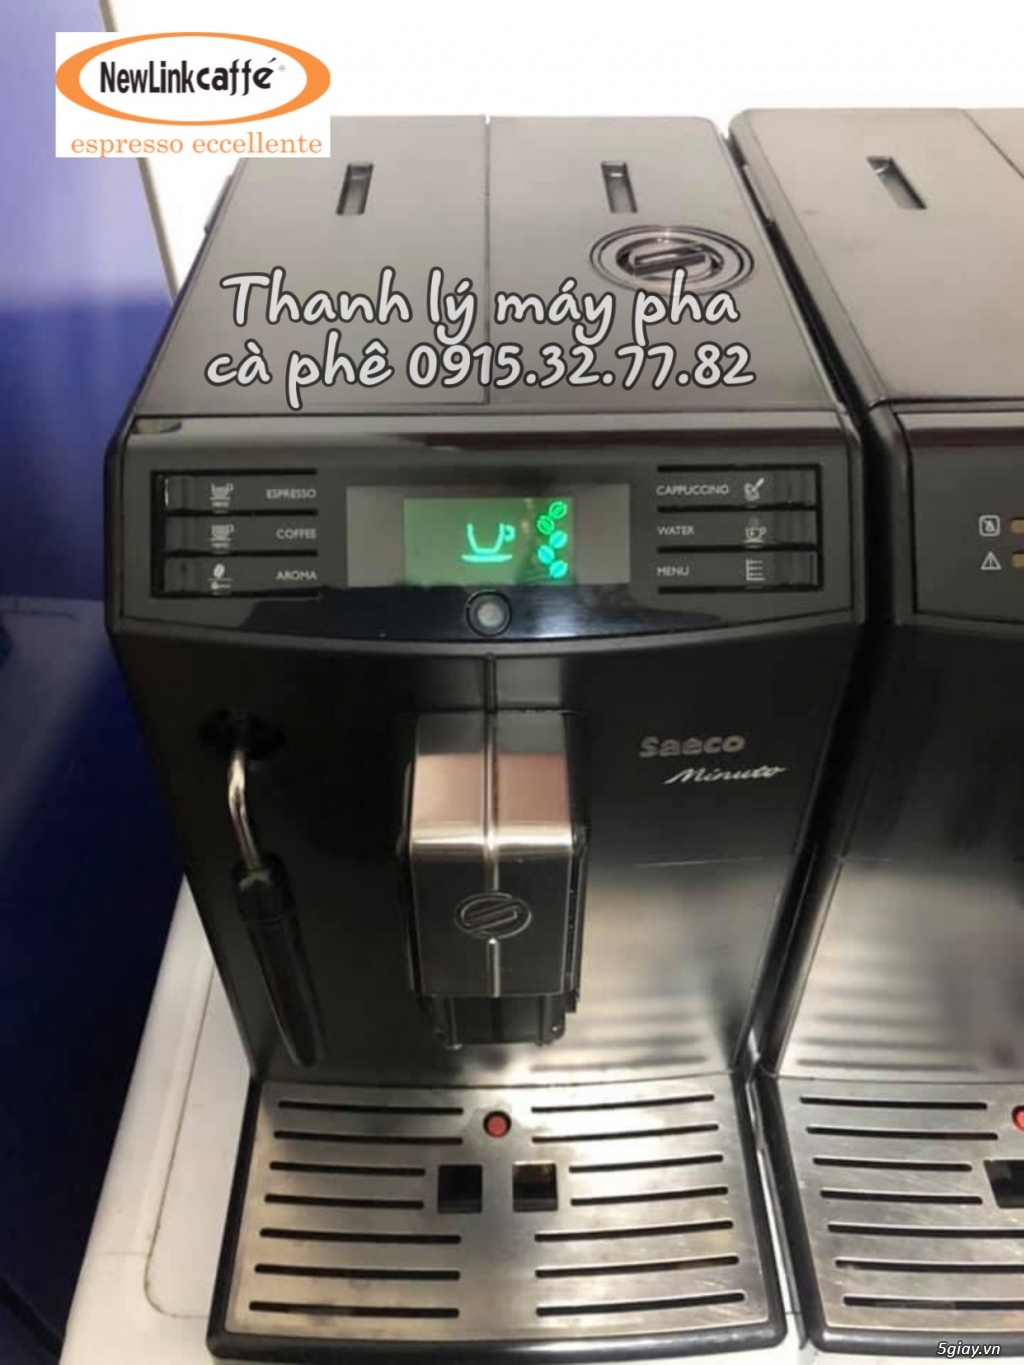 Thanh lý máy pha cà phê Nouvasimoneli giá rẻ nhất tại Hcm - 1